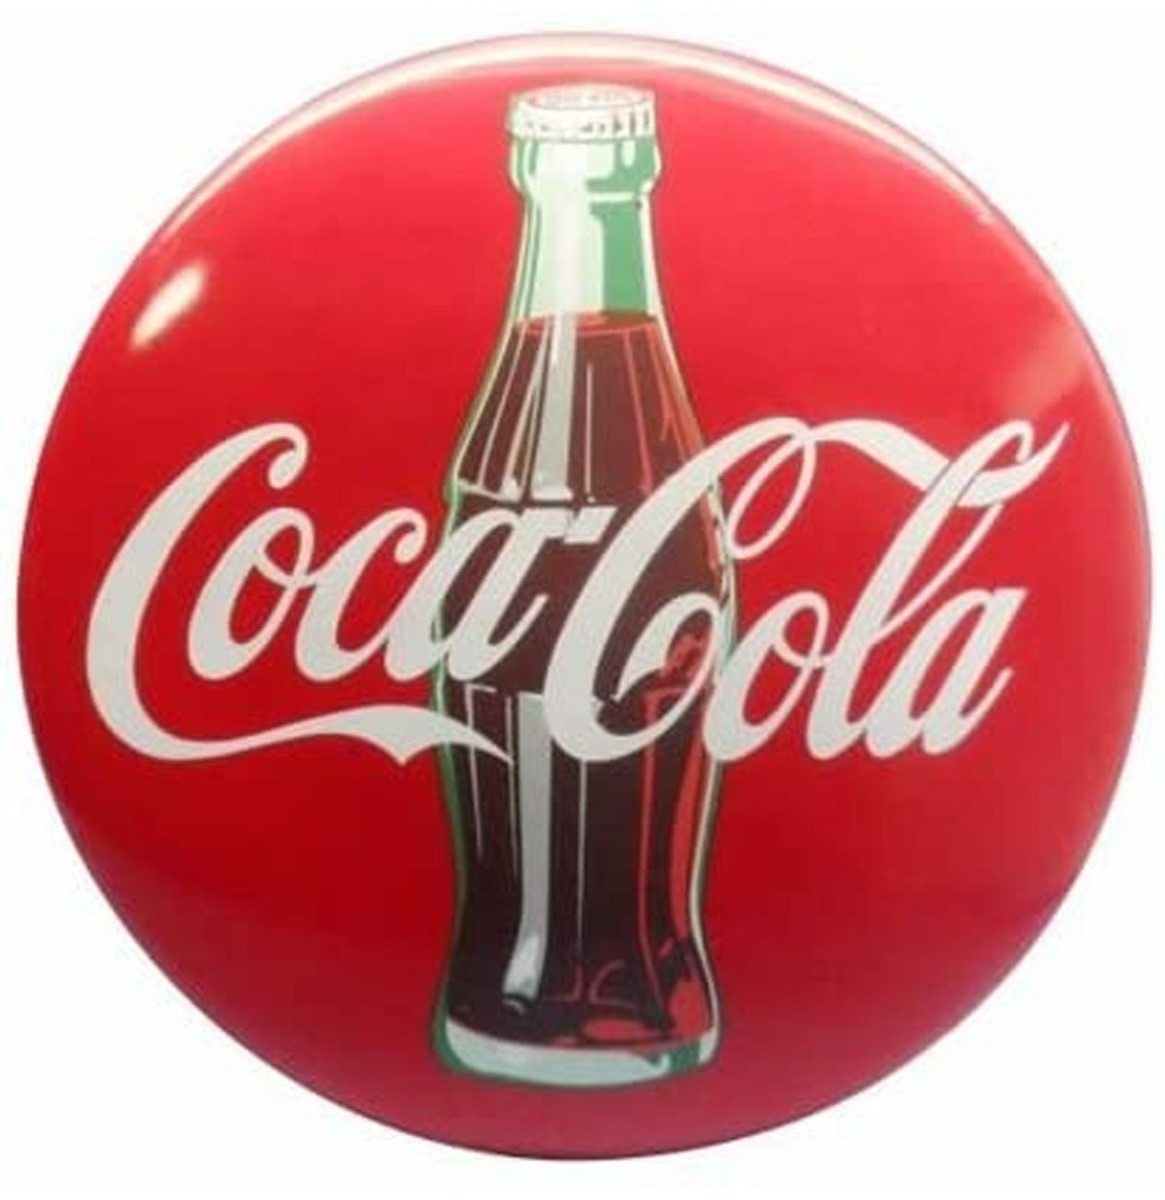 Coca-Cola Hars Contour Fles 3-D Button Bord